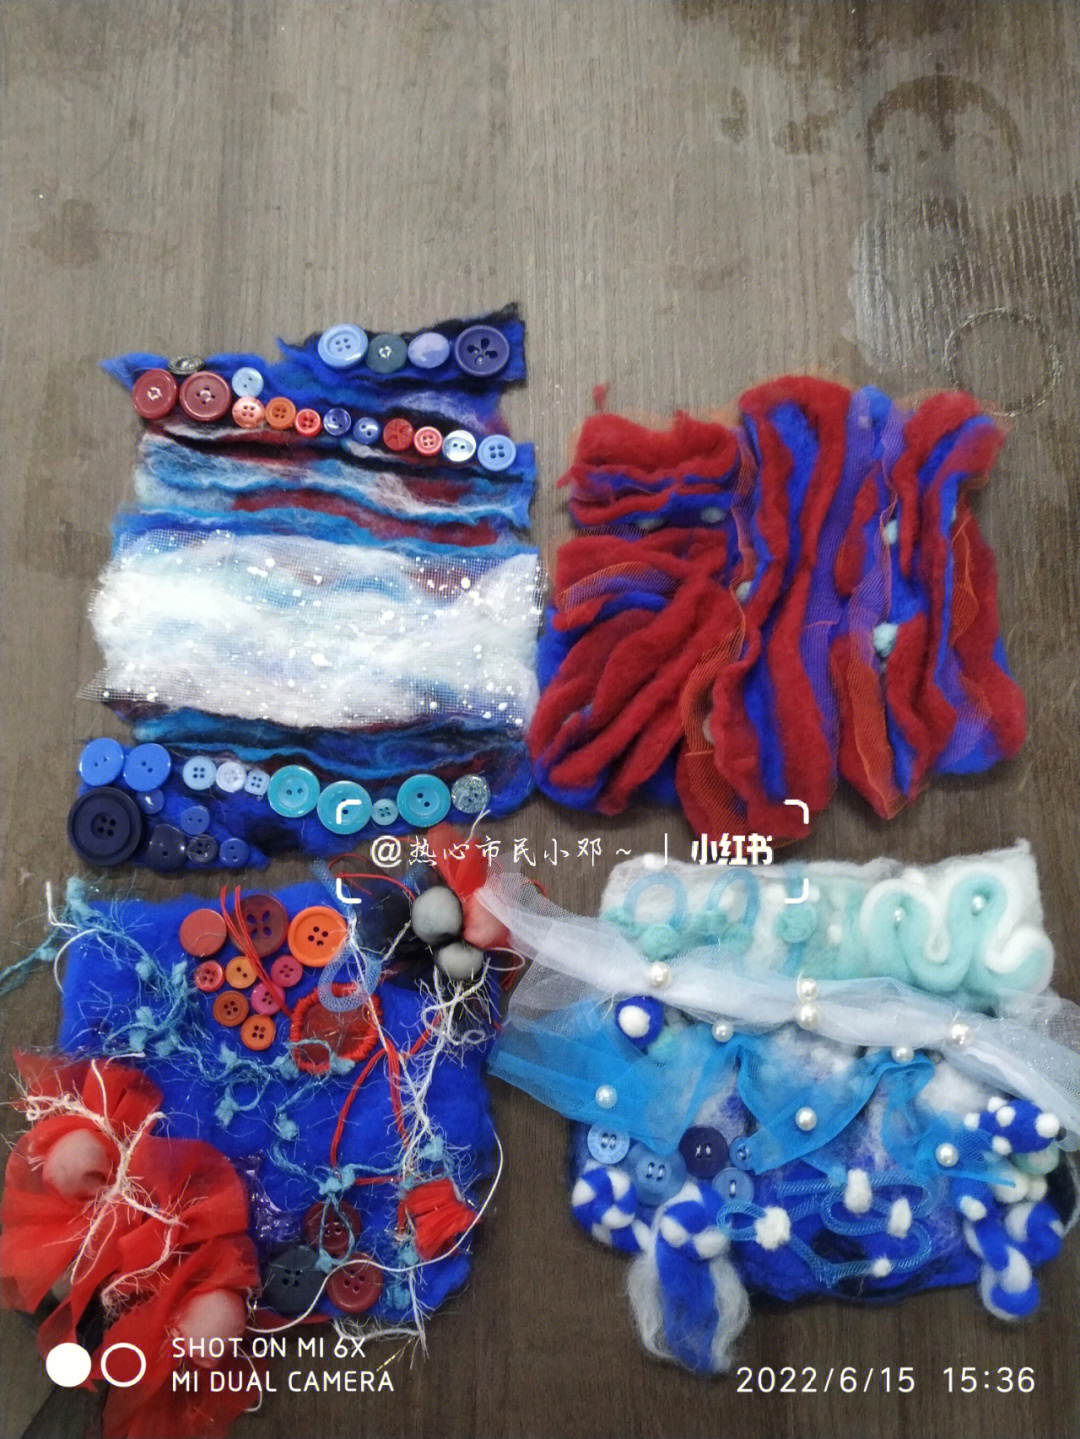 面料再造课作业,关于海洋的一个小系列材料:湿毡羊毛,肥皂,扣子,纱布